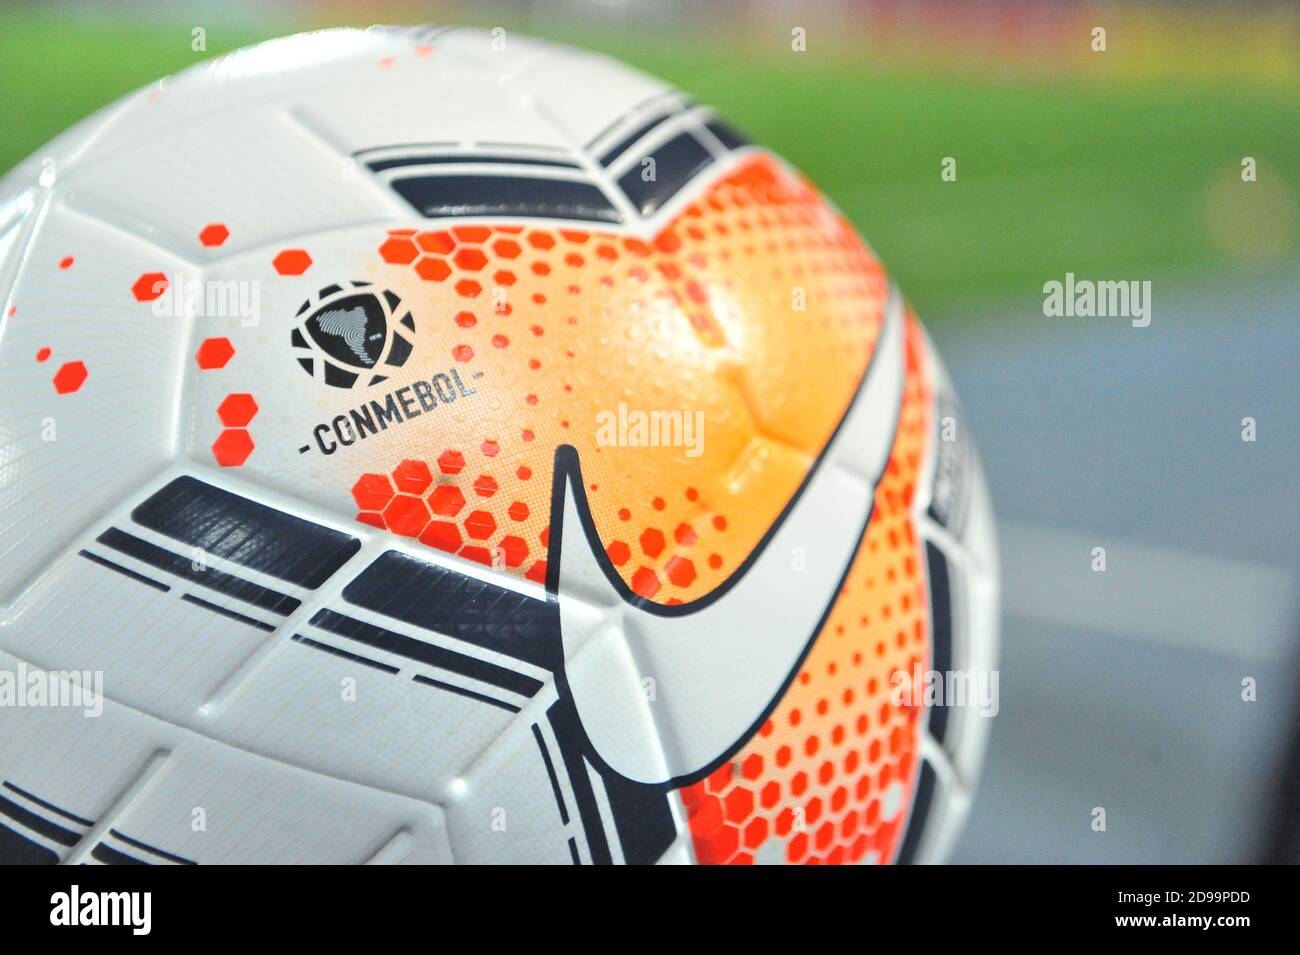 CONMEBOL official ball Stock Photo